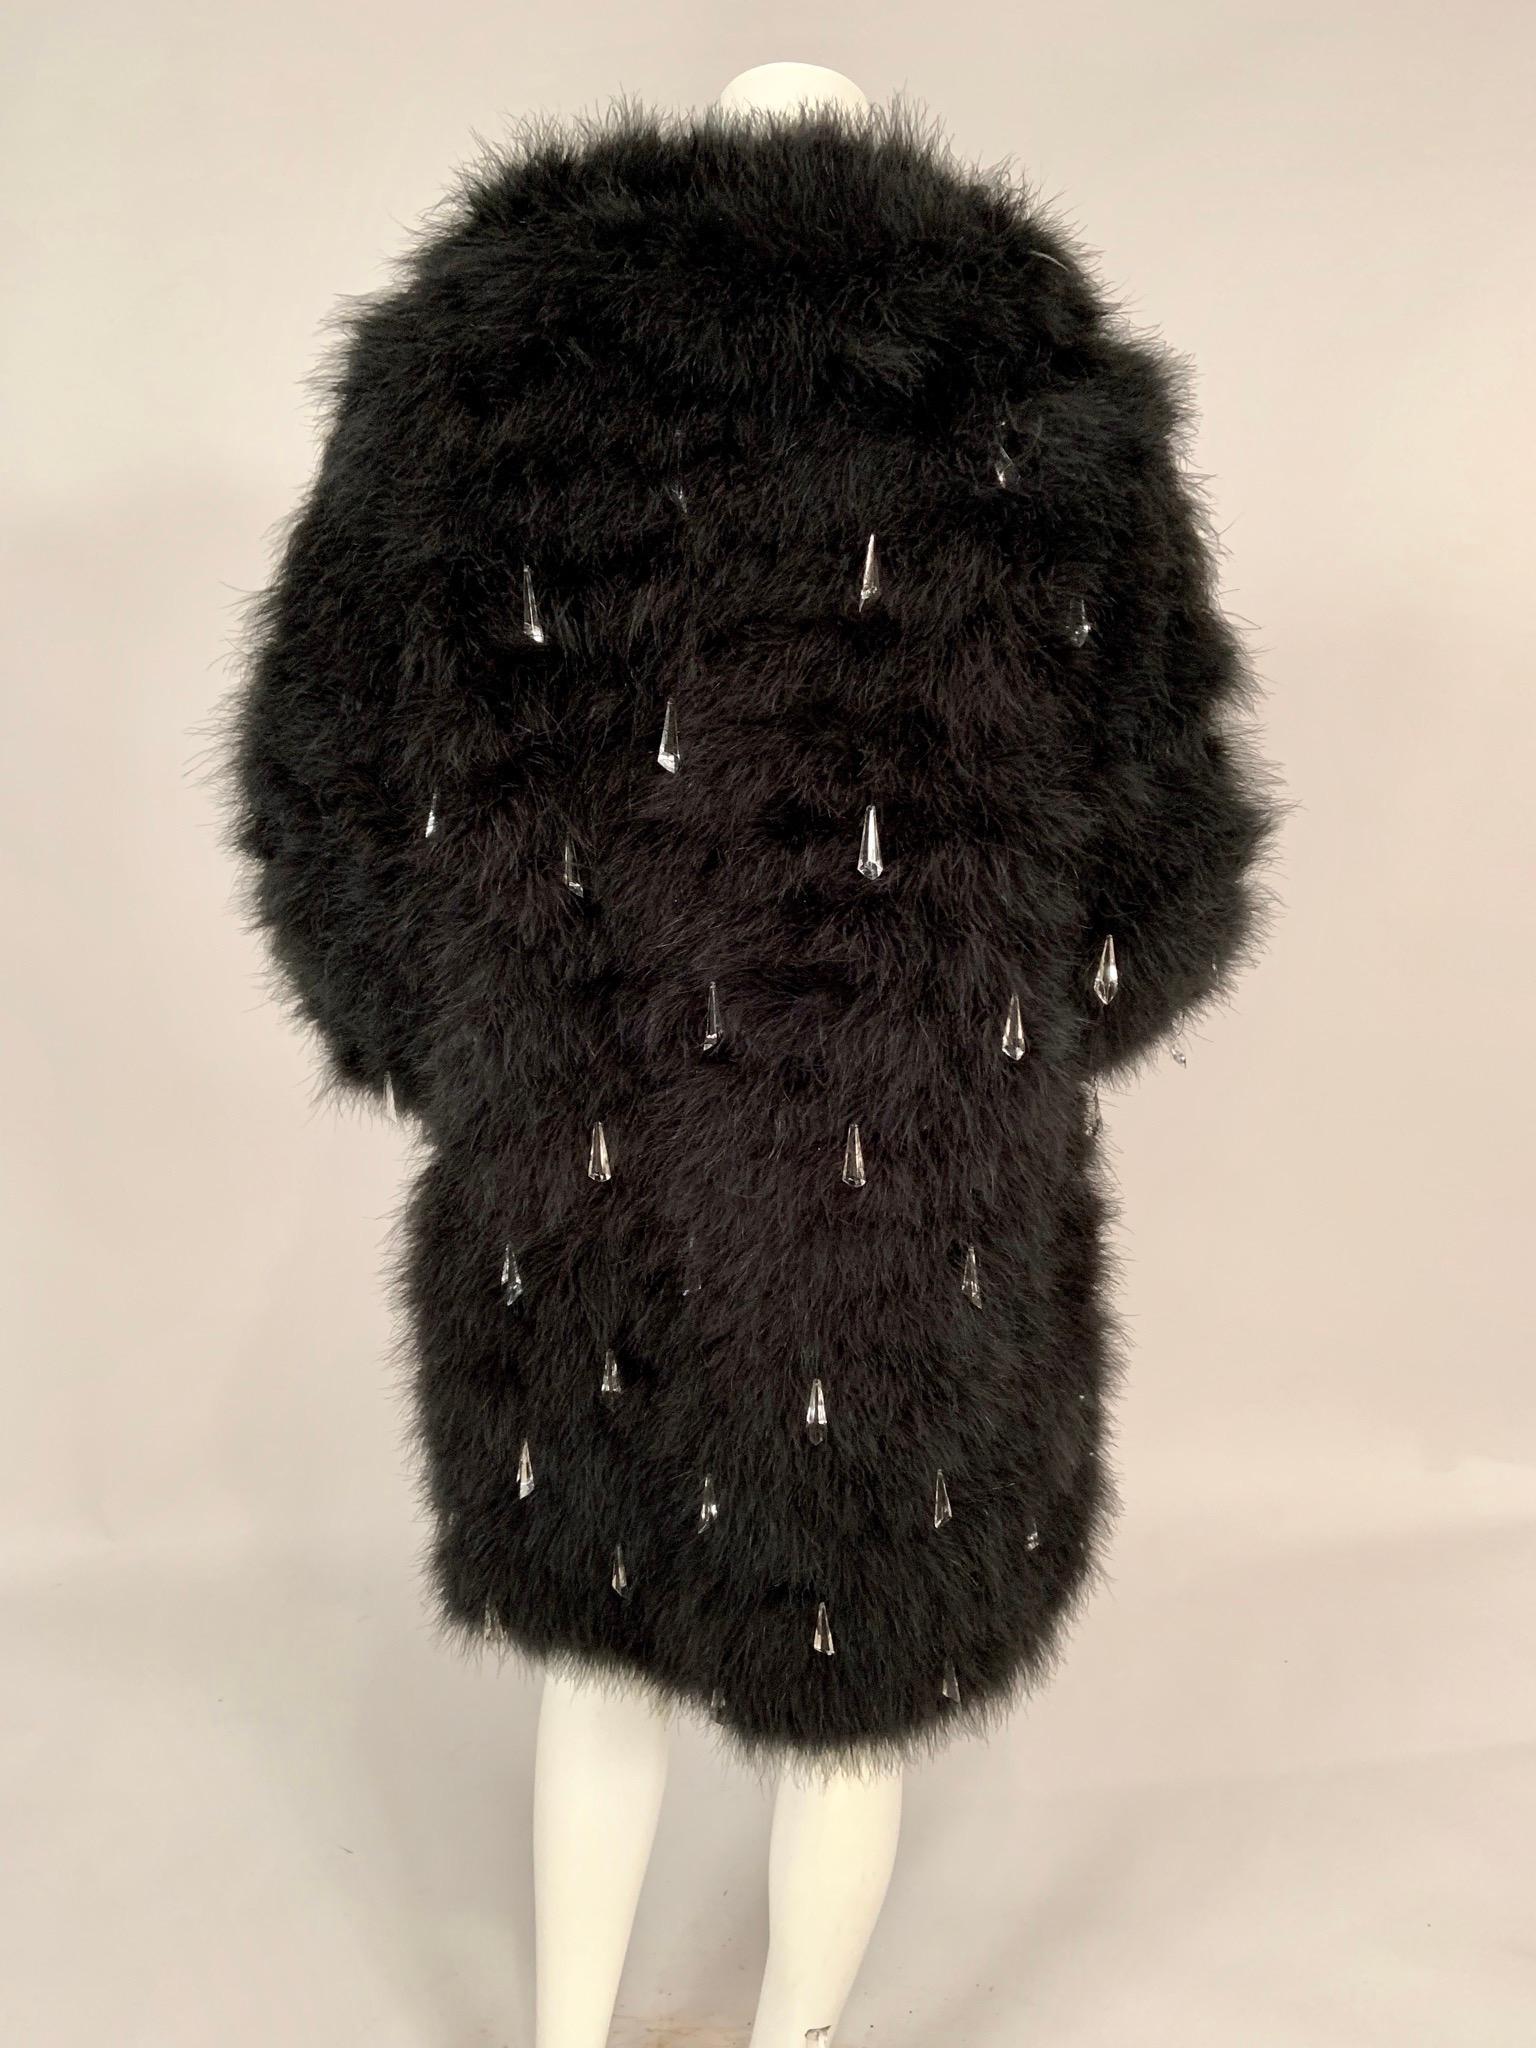 Yves Saint Laurent Black Marabou Feather Coat Dangling Clear Plastic Prisms 1